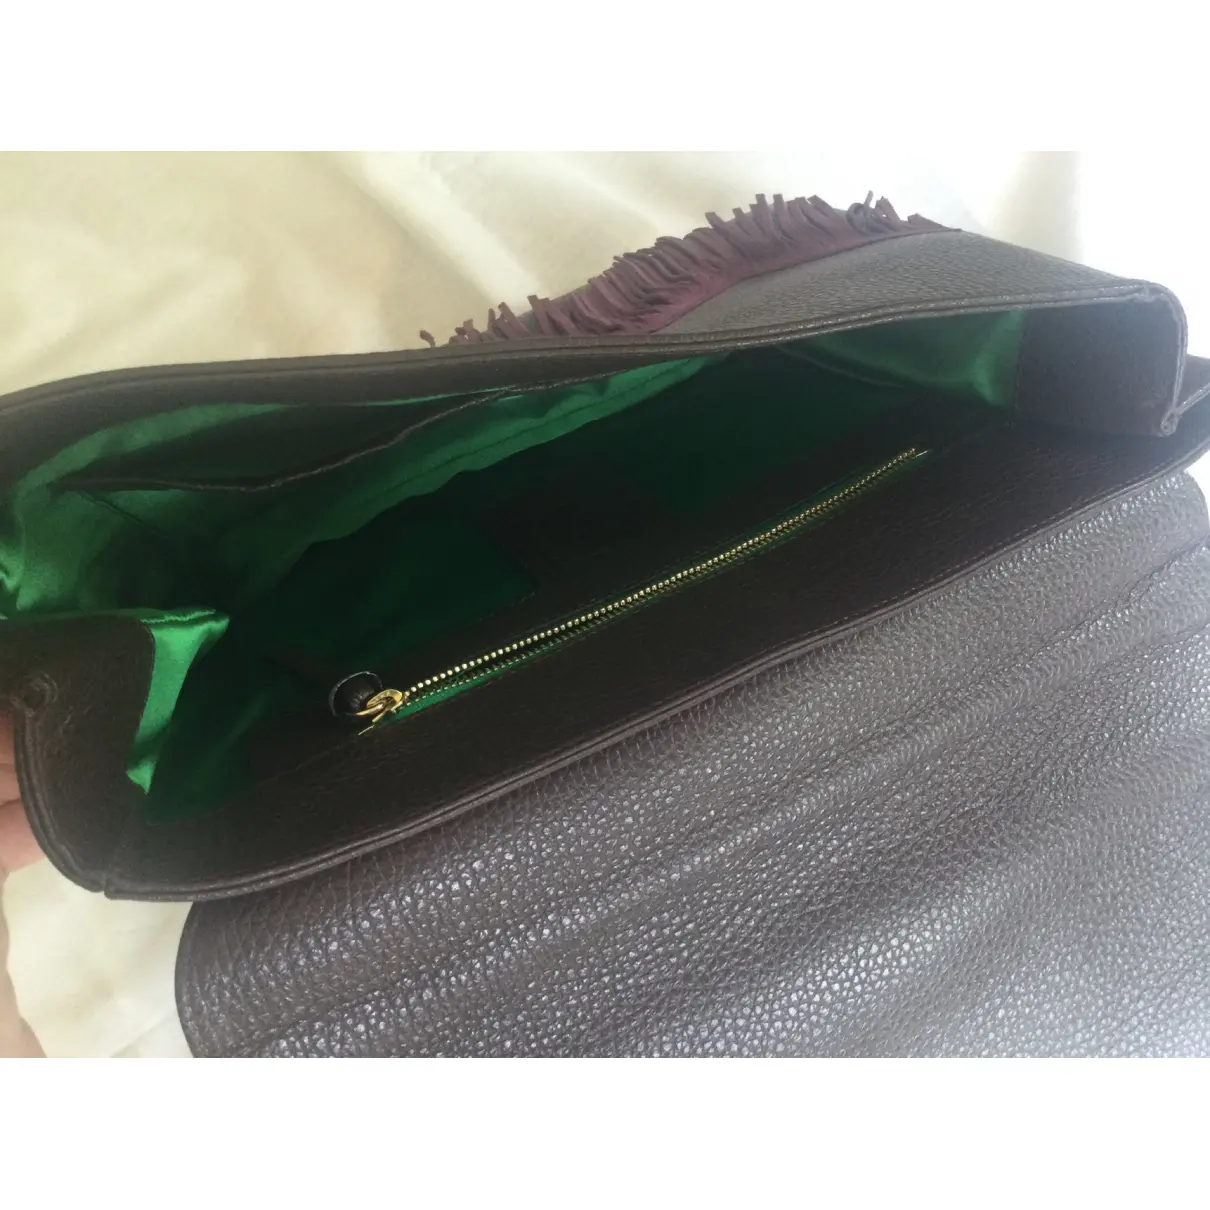 Luxury Sara Battaglia Handbags Women